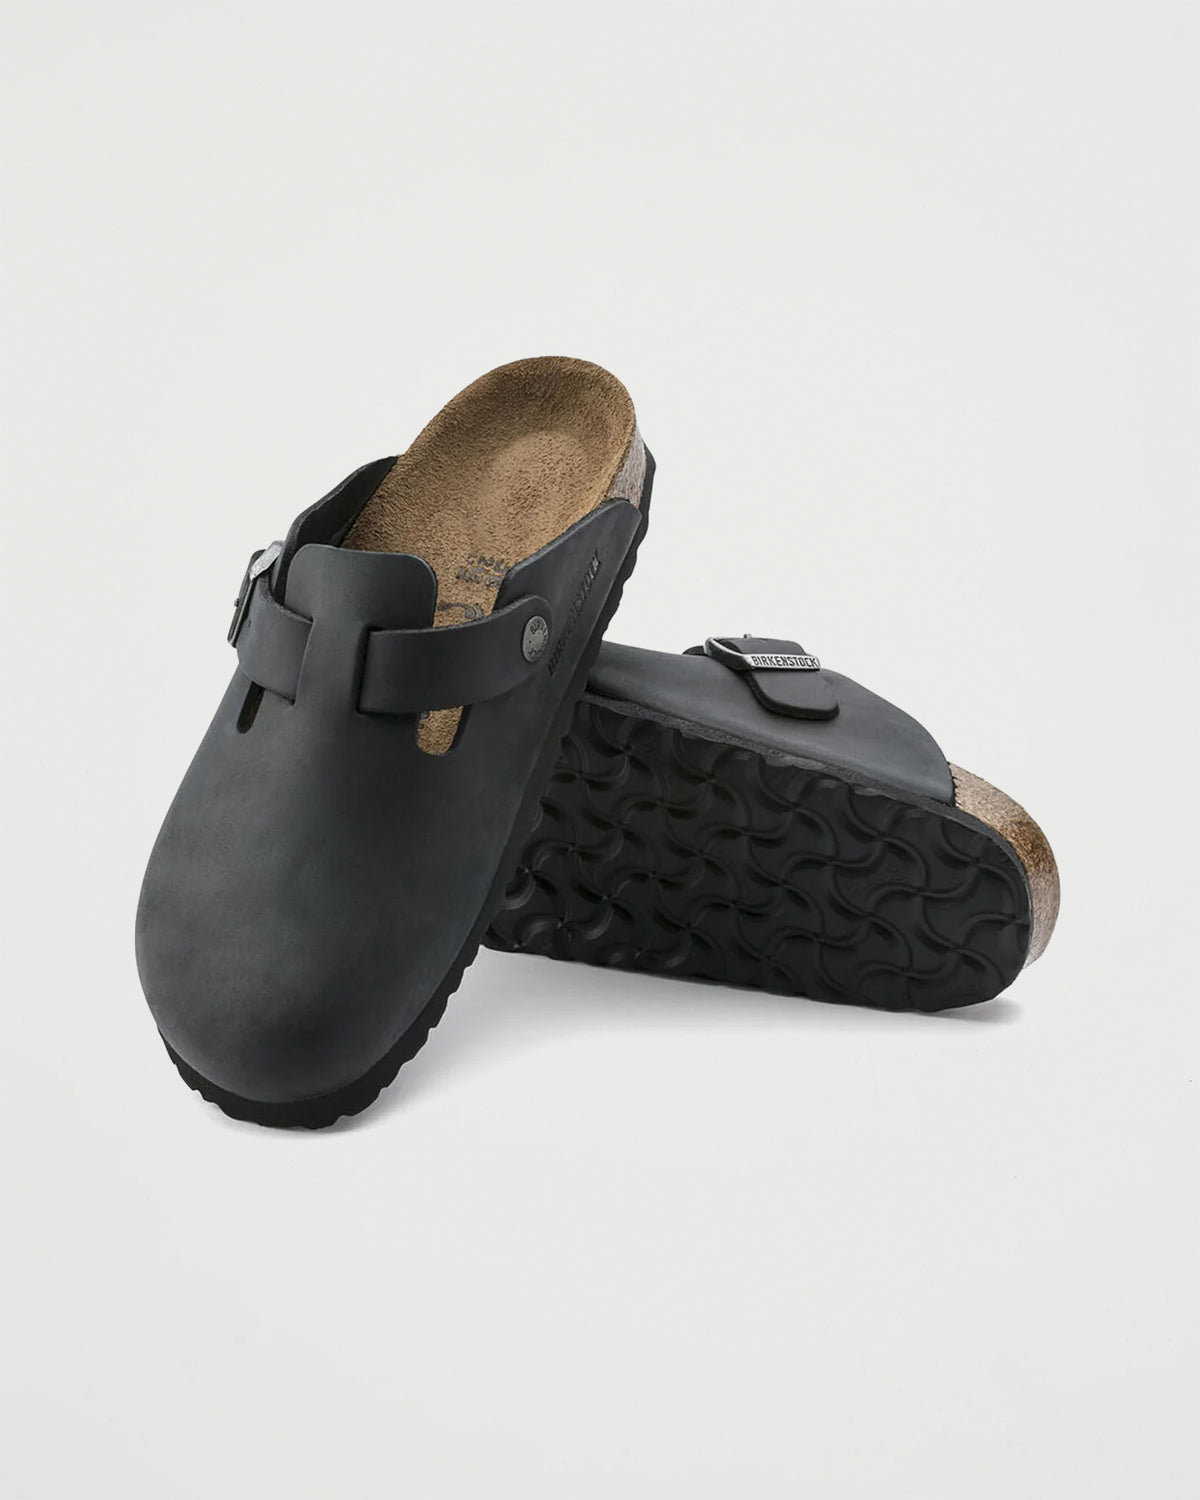 Birkenstock Boston Black Waxy Shoes Leather Unisex